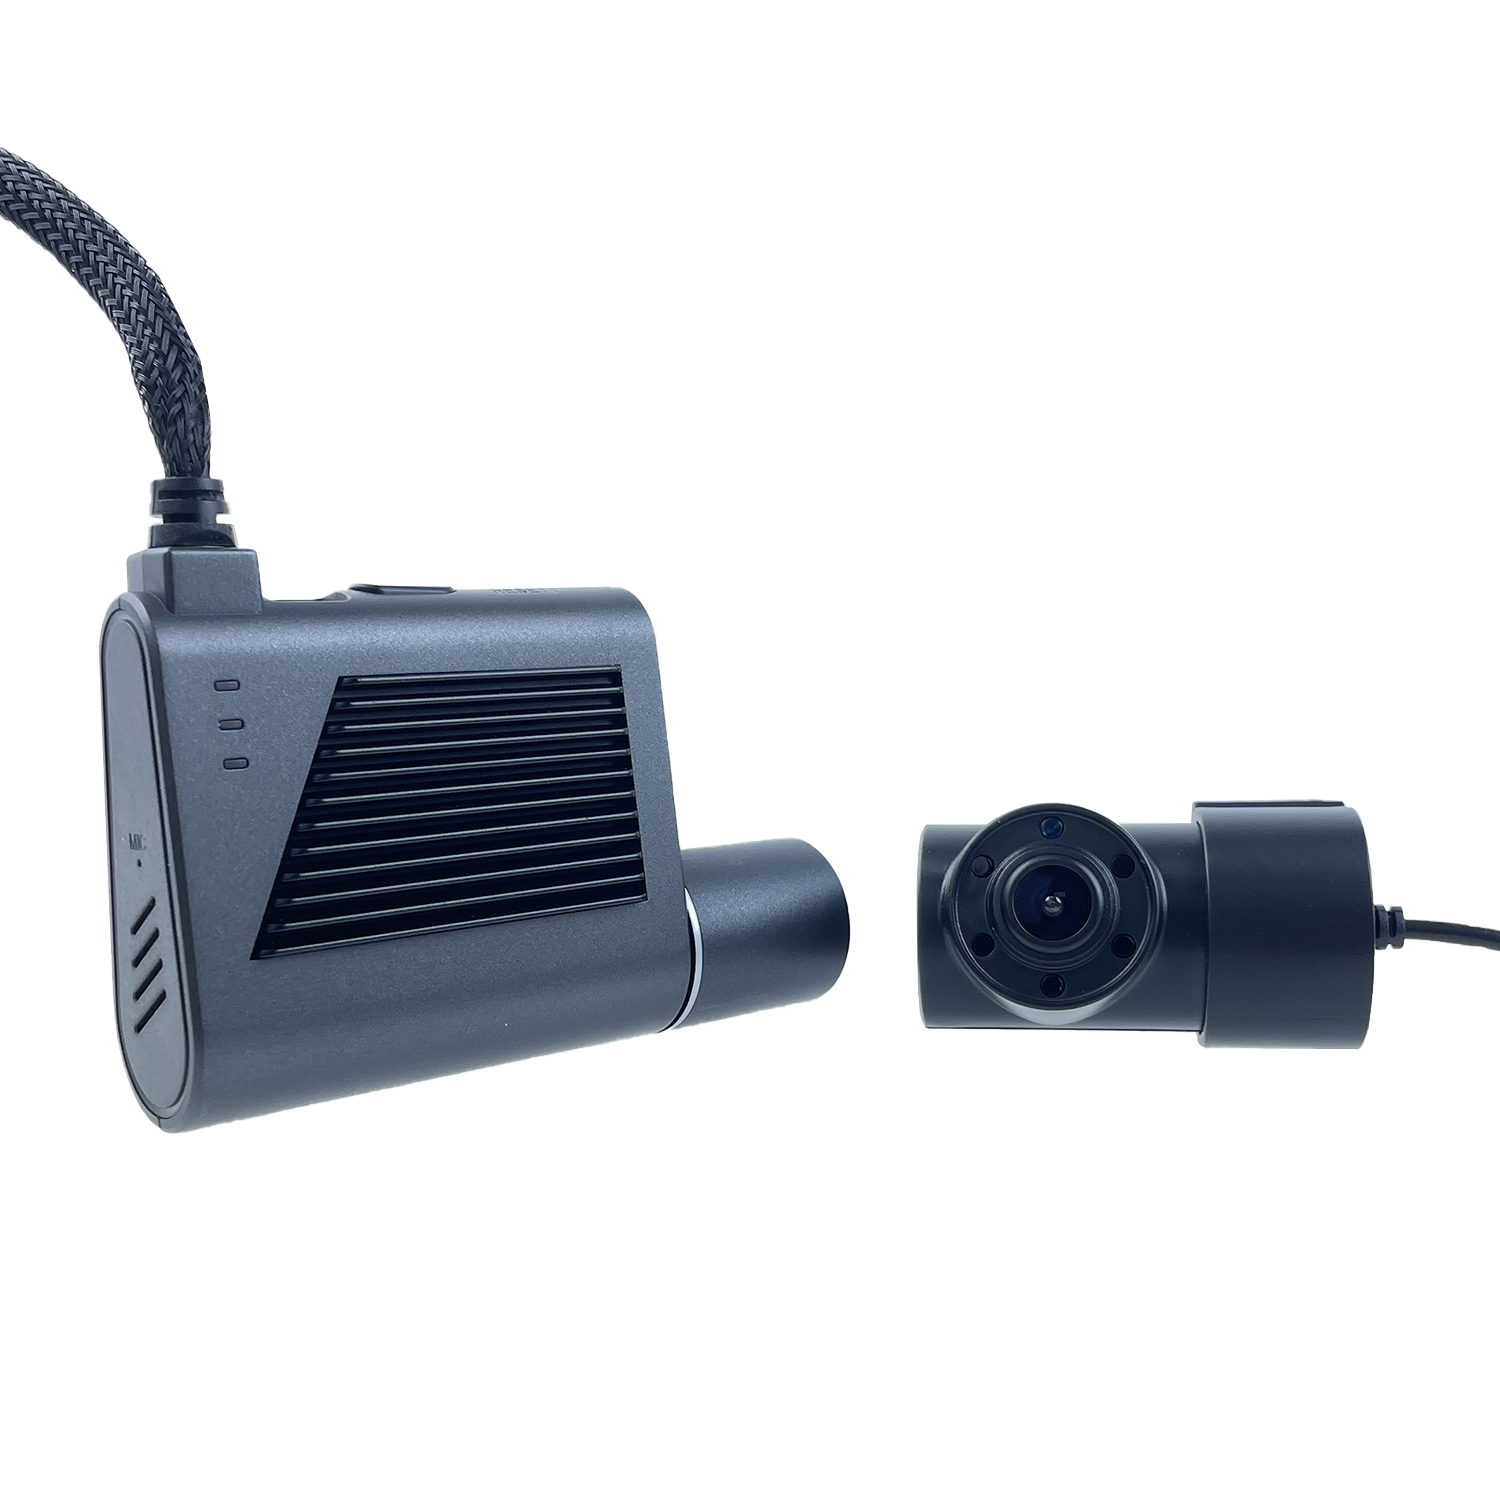 MCY Dual Lens 4G Mini Dash Cam novērošanas kamera ar SIM karti, kas piemērota CMSV6 platformas DMS izvēles piedāvātais attēls